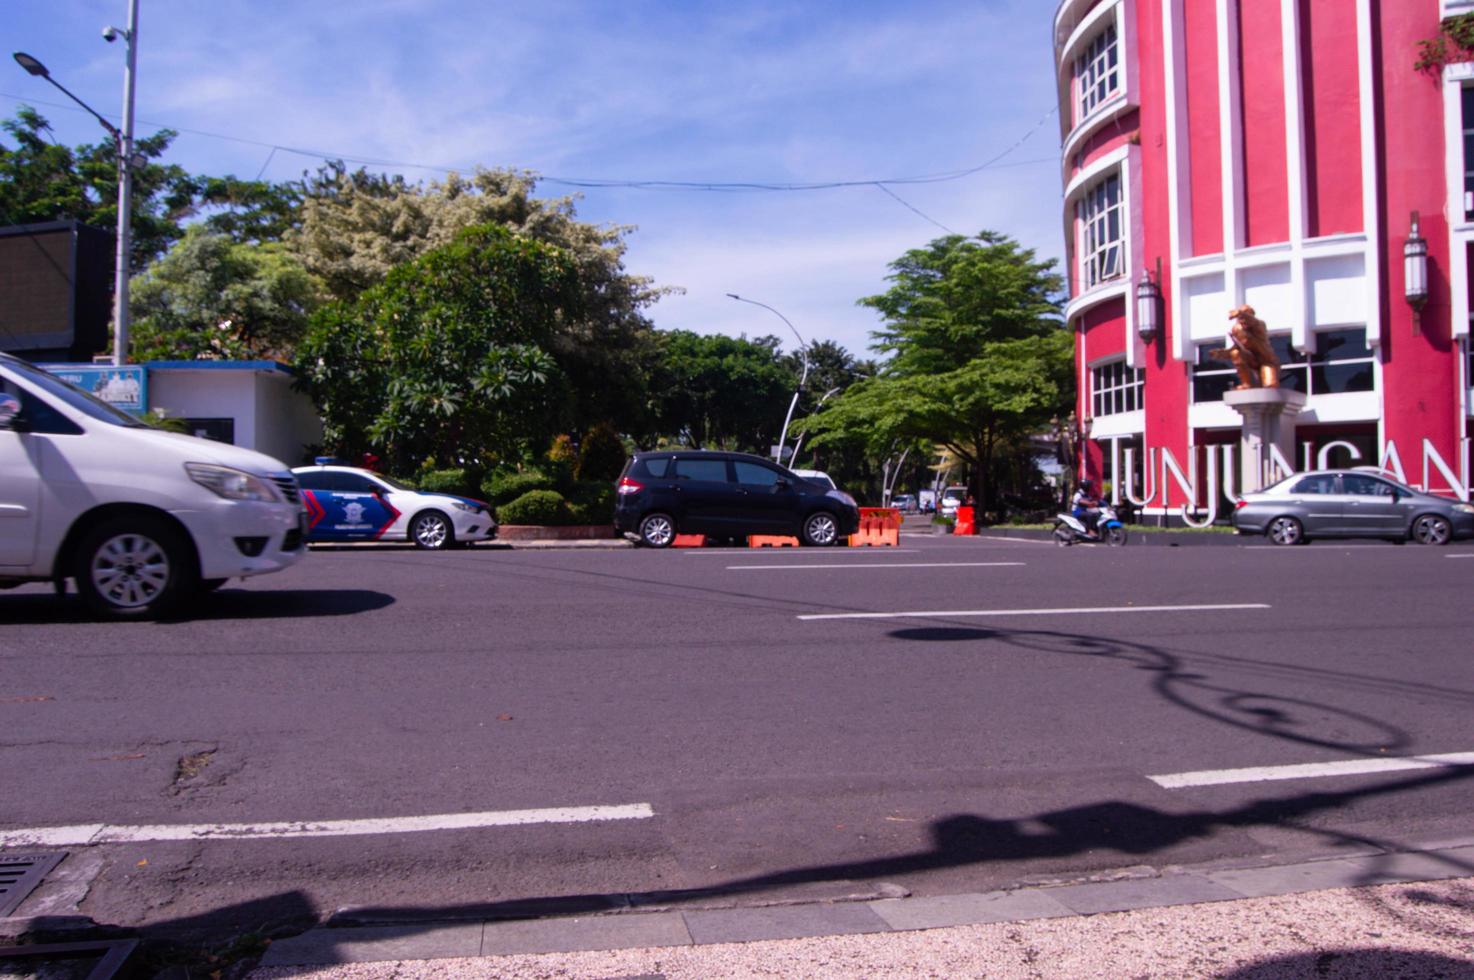 surabaya, Indonesia, 2022 - Visualizza di strada condizioni su surabaya tunjungan strada foto